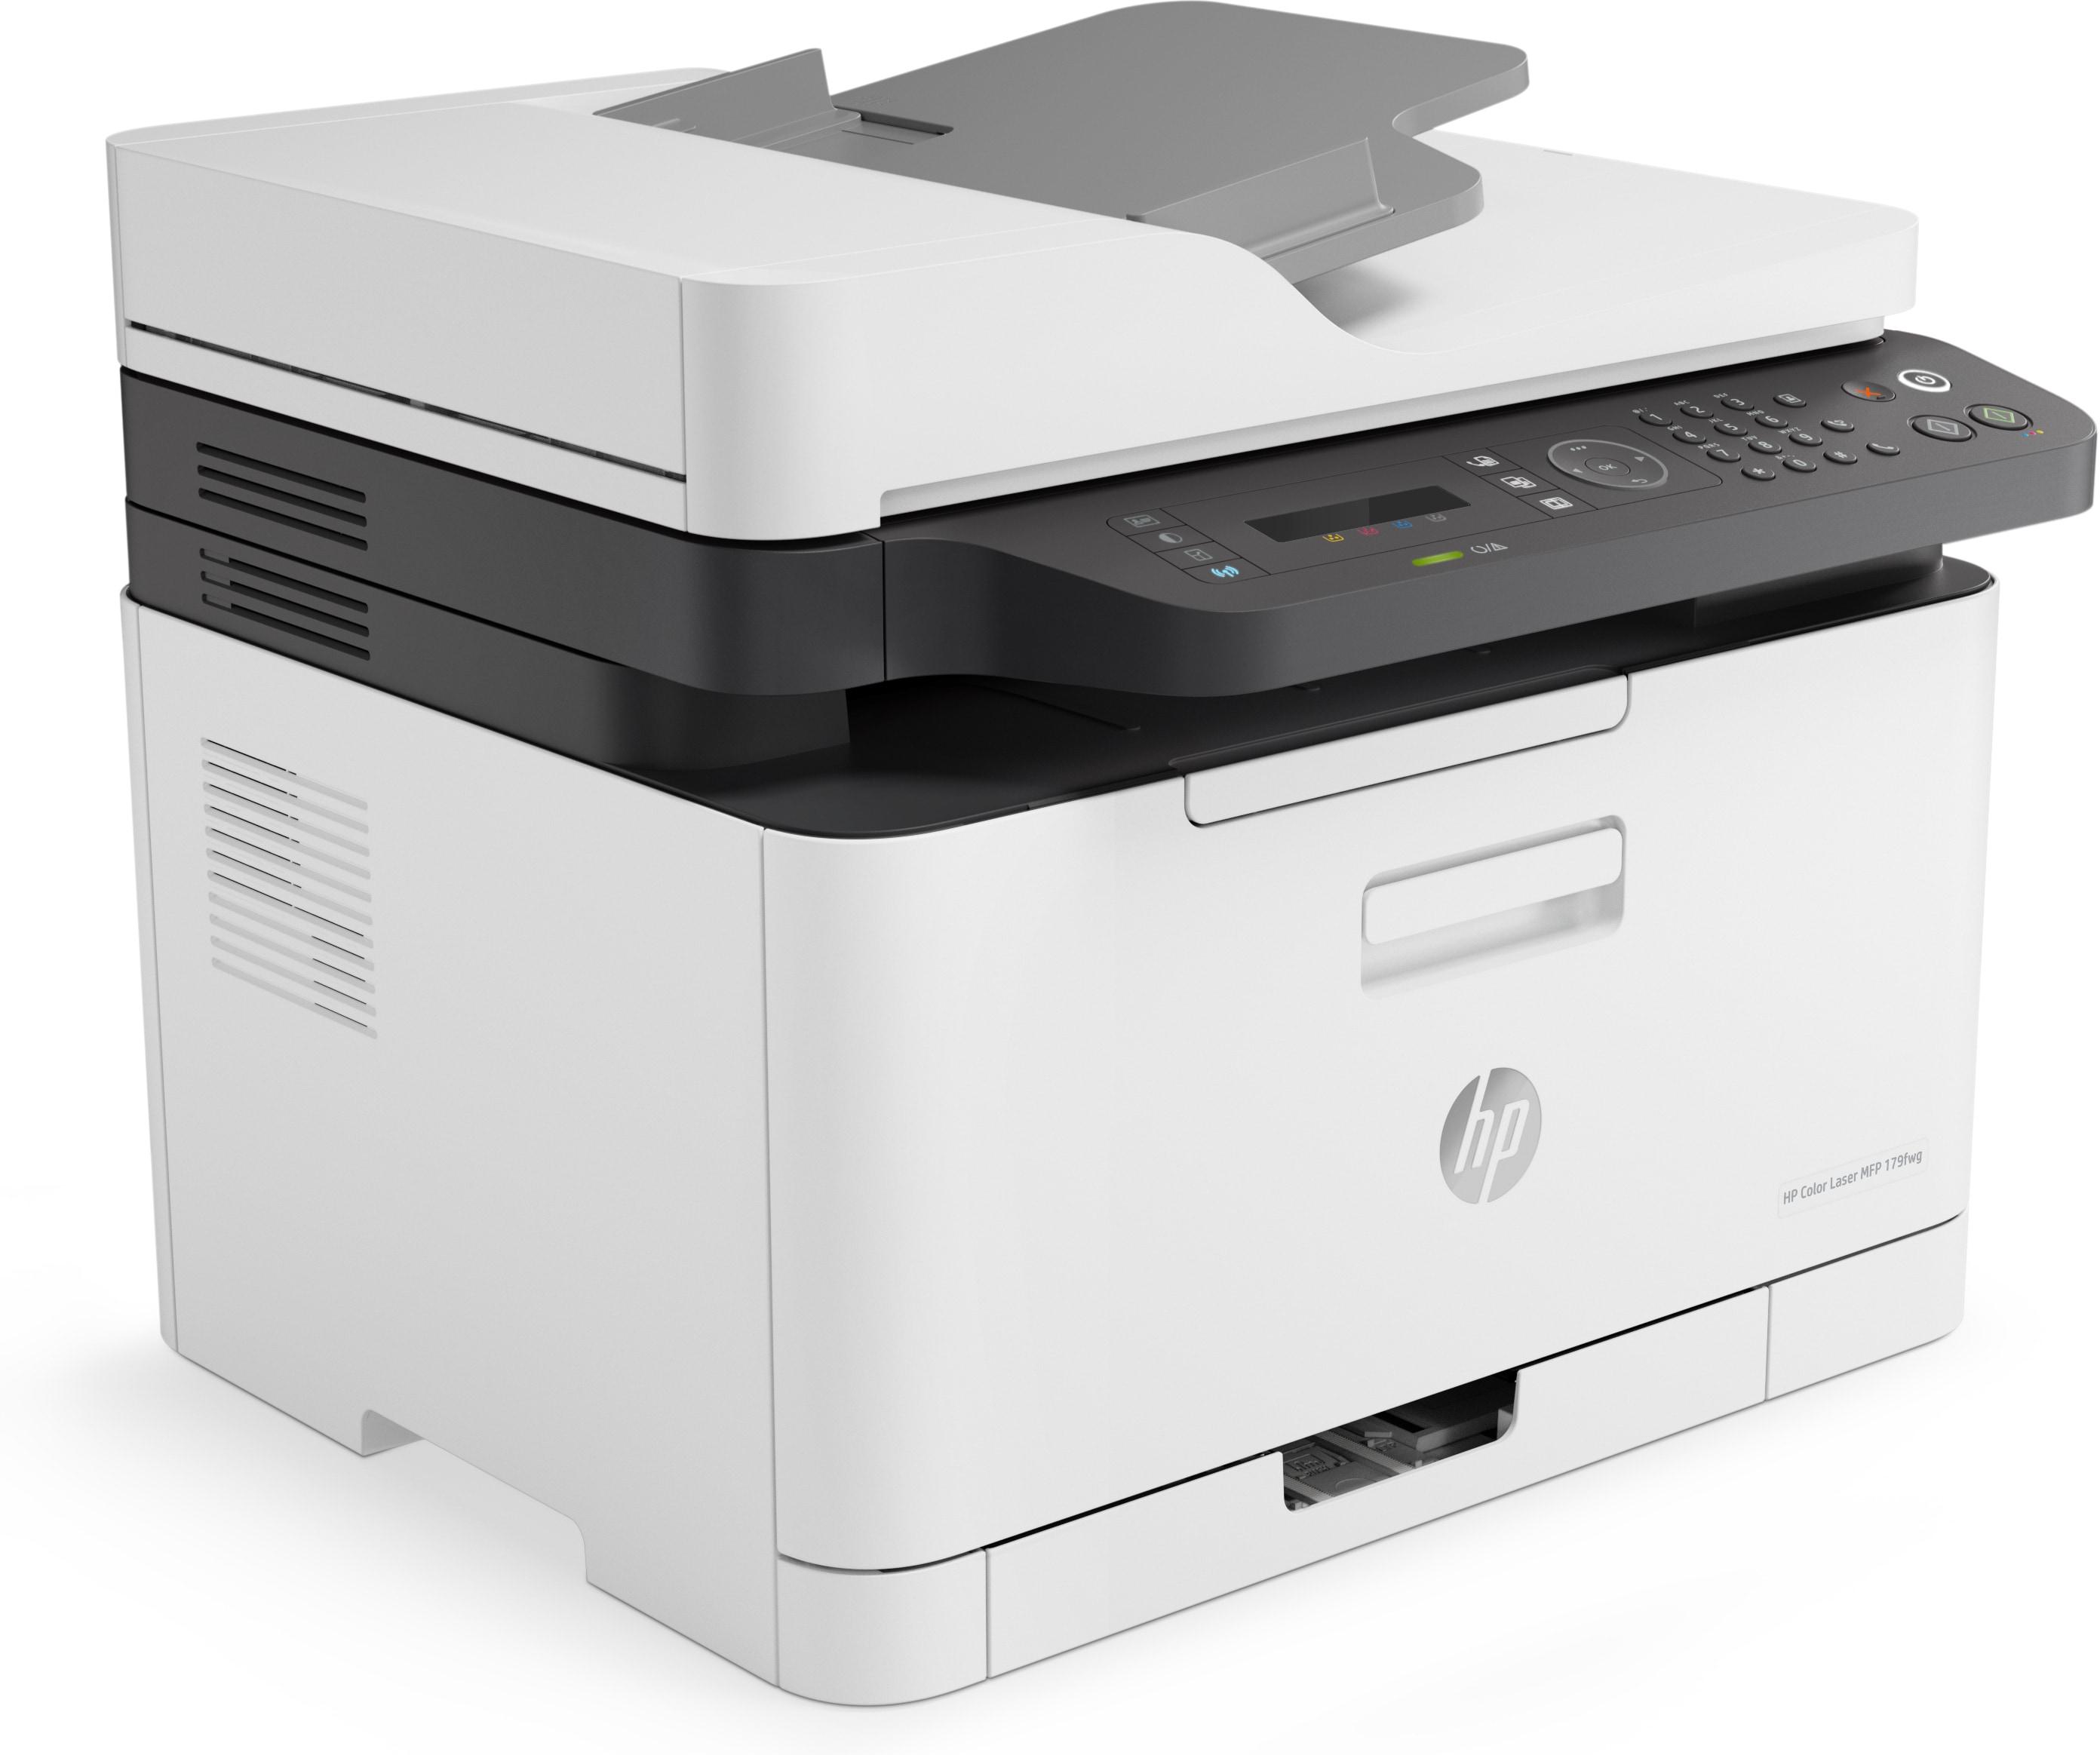 HP - Impressora Jato de Tinta HP Laserjet Color MFP 179fnw